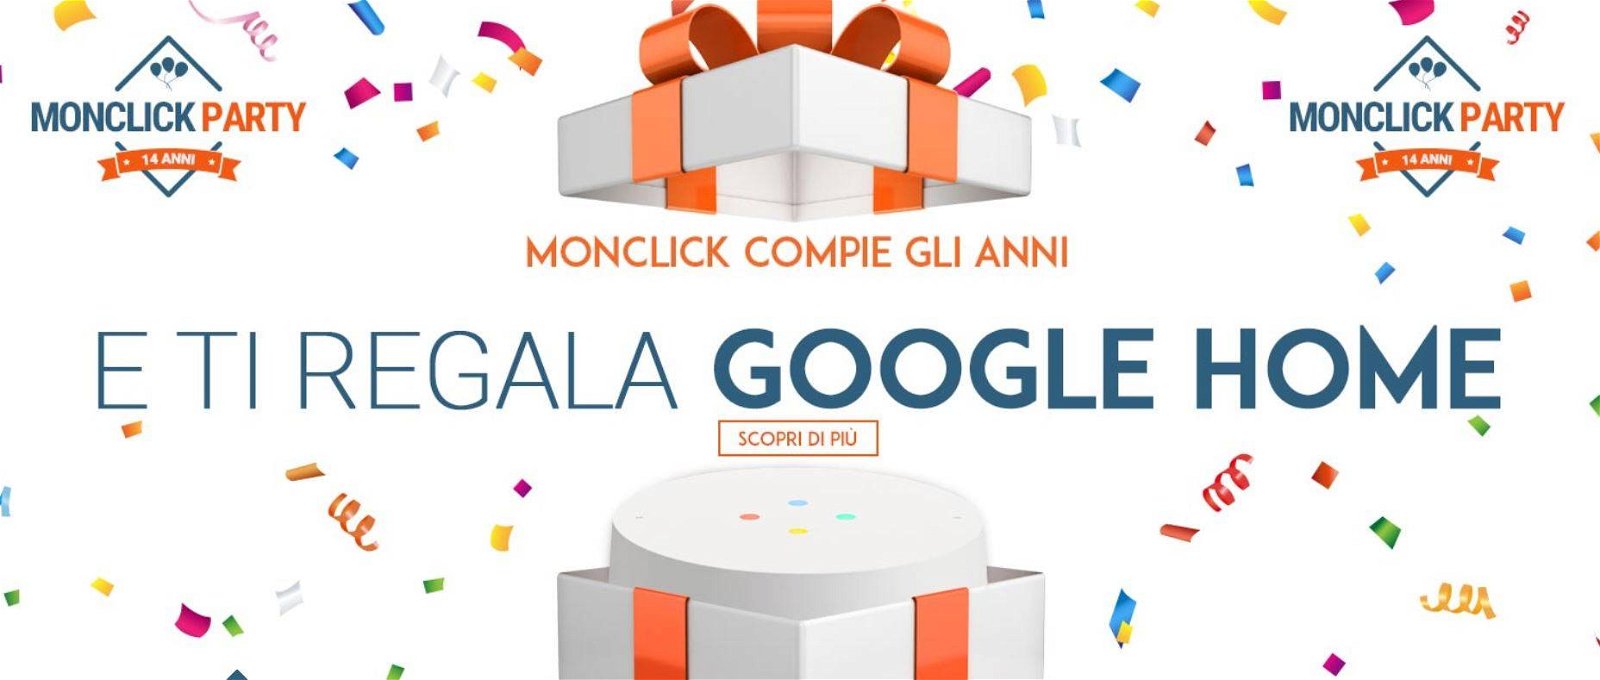 Immagine di Google Home in regalo per il compleanno di Monclick